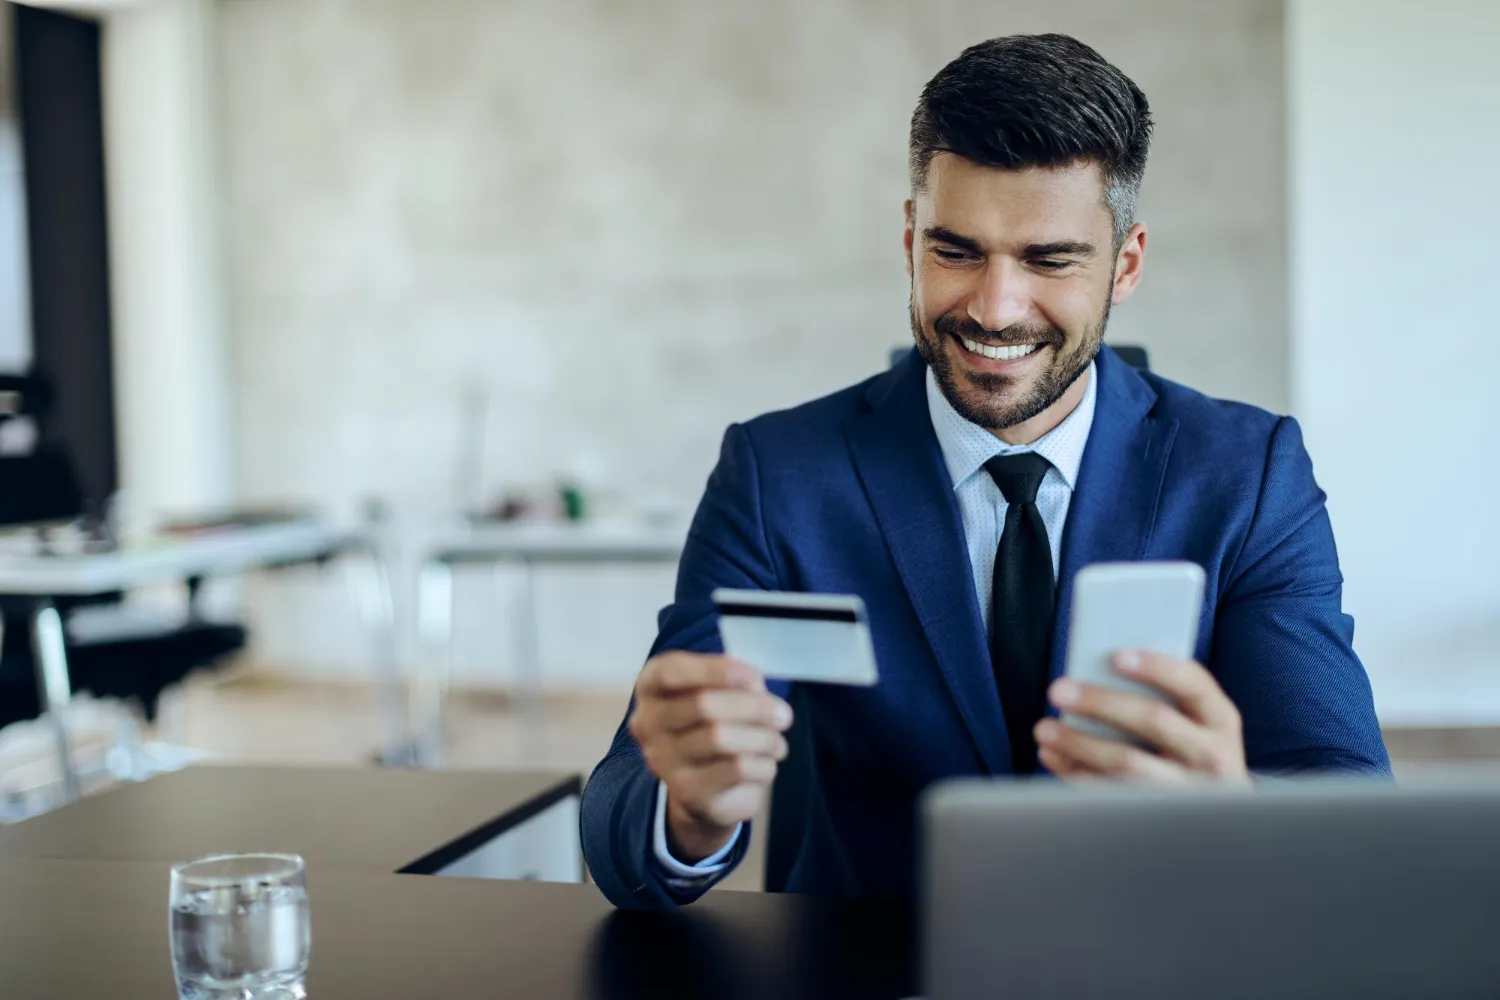 Pix e cartão de crédito se destacam entre consumidores, aponta pesquisa